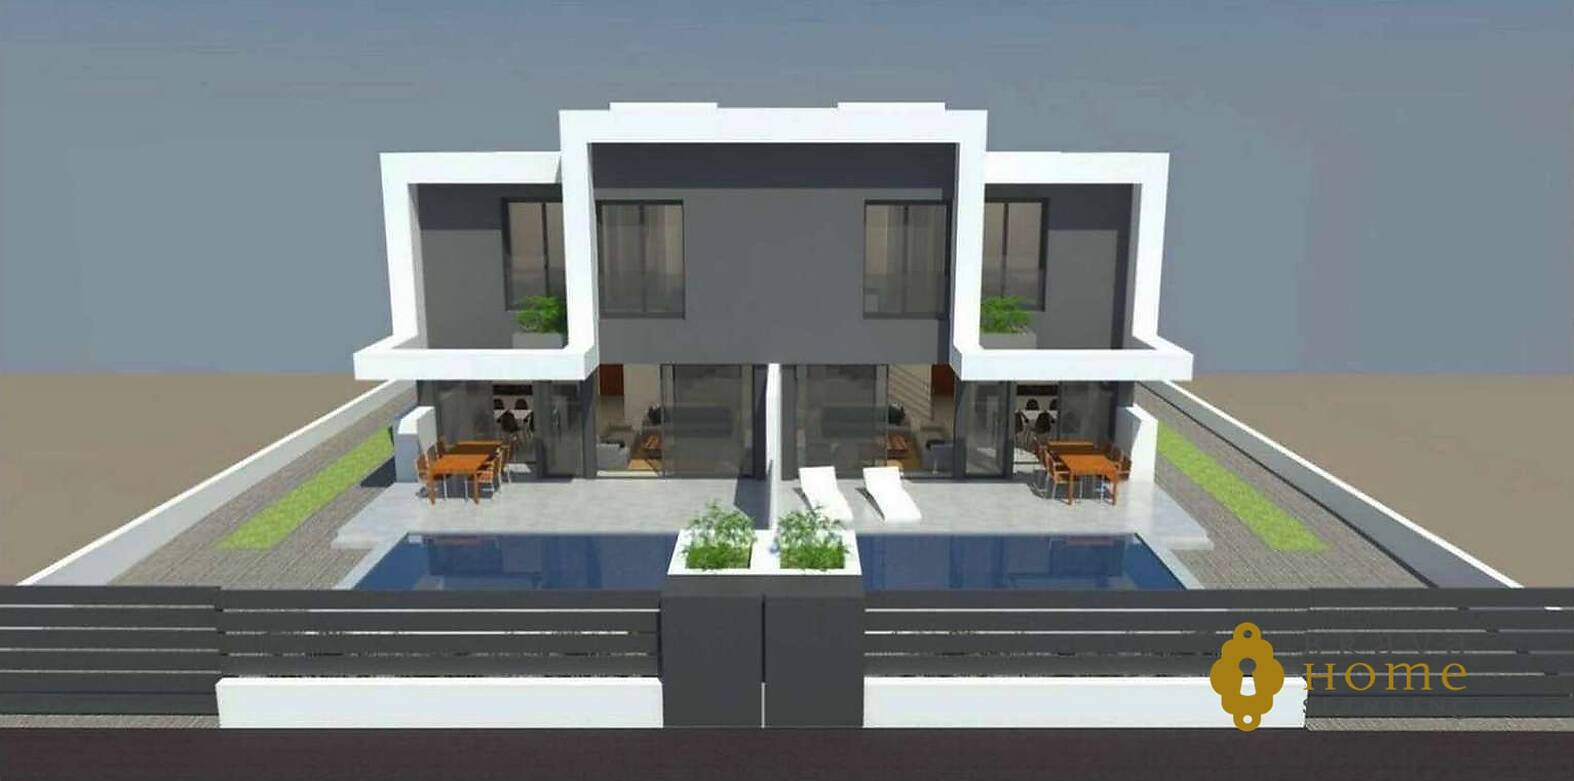 Casa de estilo moderno en construcción en venta Empuriabrava